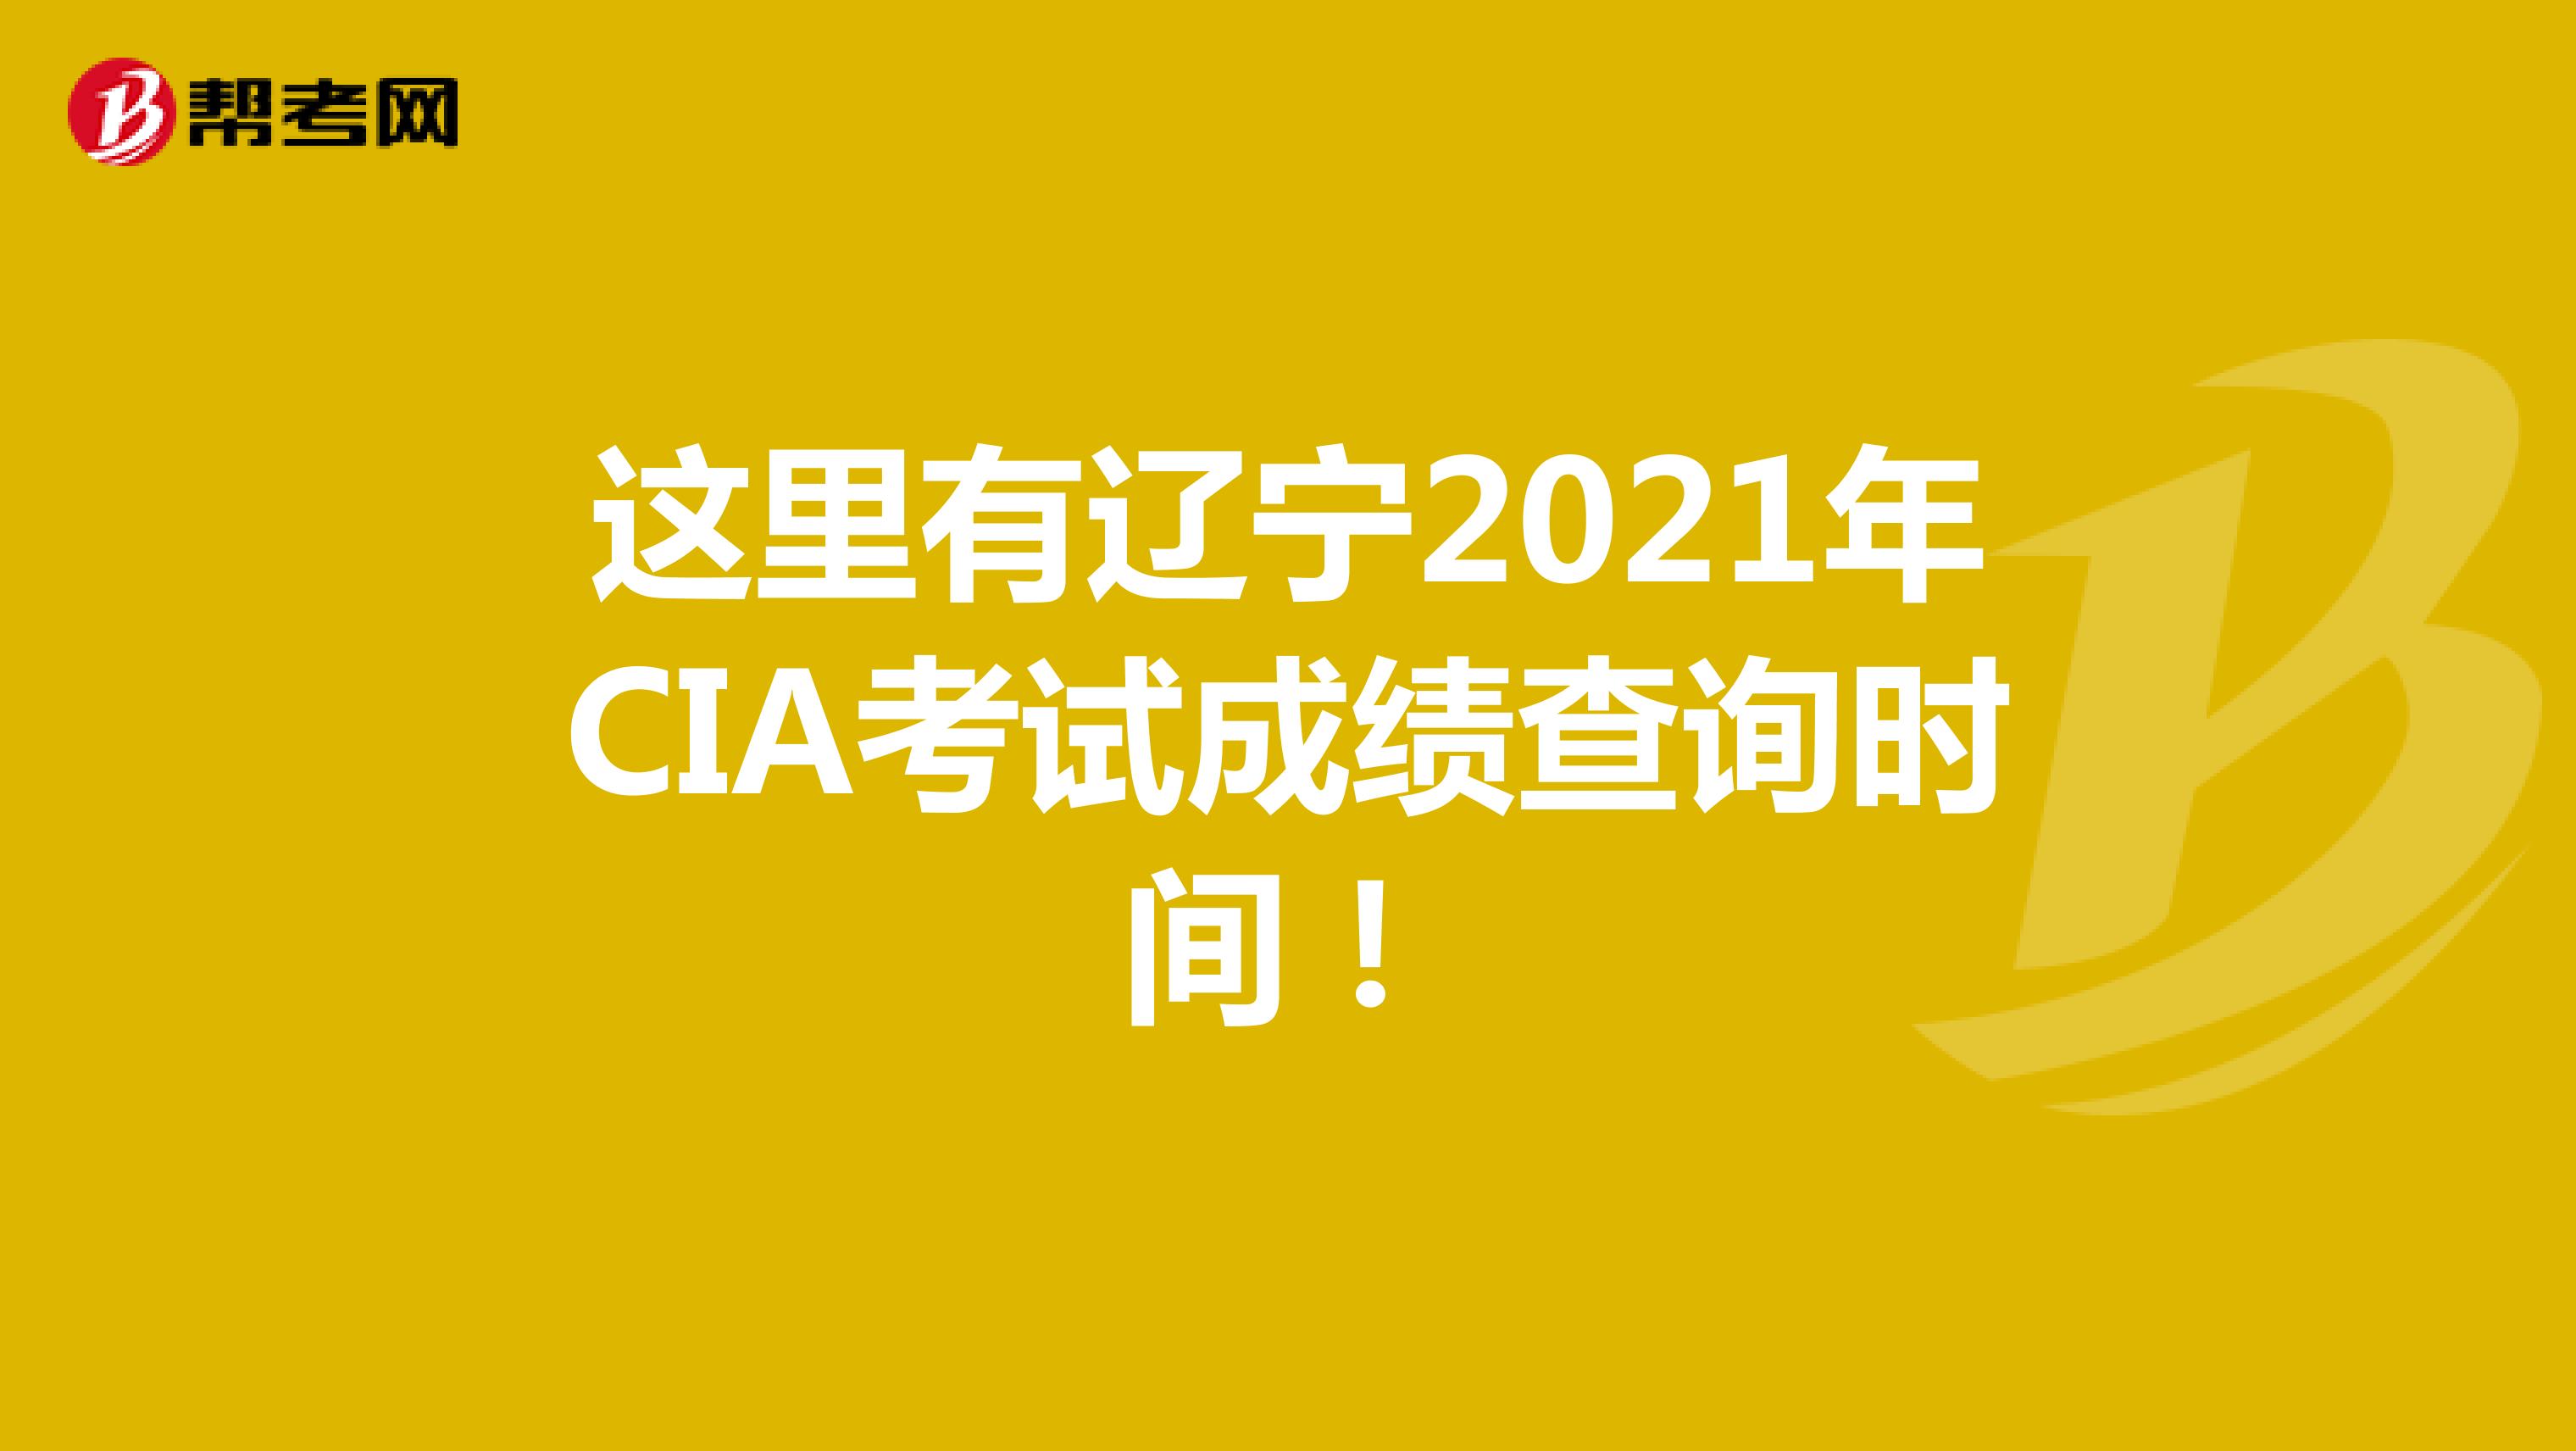 这里有辽宁2021年CIA考试成绩查询时间！